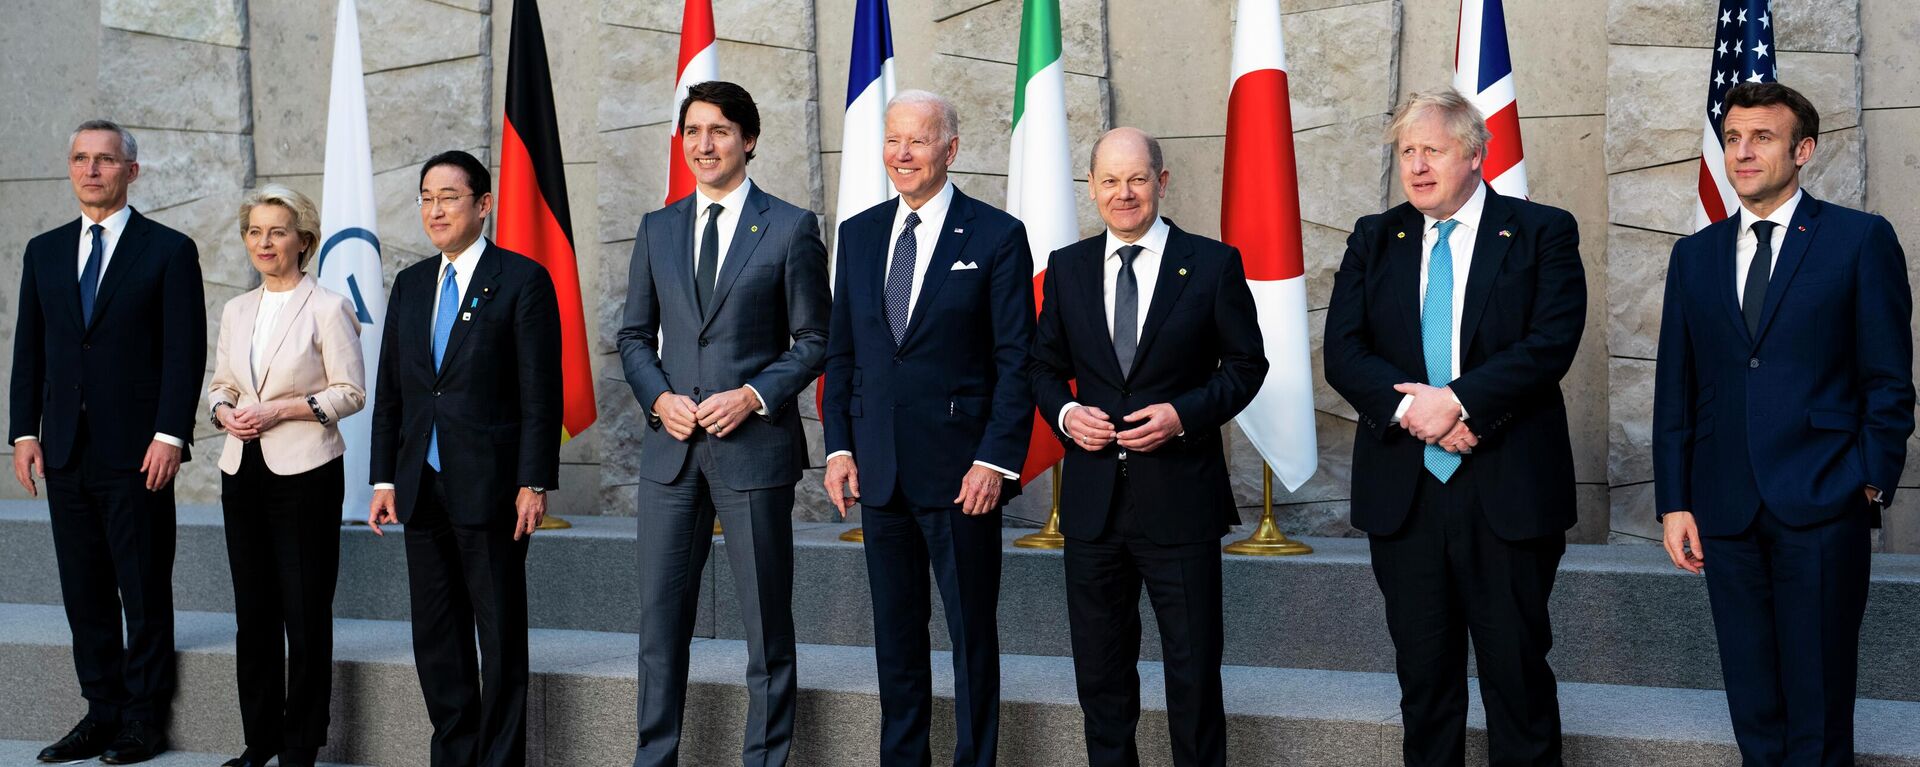 Da esquerda para a direita: o secretário-geral da OTAN, Jens Stoltenberg; a presidente da Comissão Europeia, Ursula von der Leyen; o primeiro-ministro do Japão, Fumio Kishida; o primeiro-ministro do Canadá, Justin Trudeau; o presidente dos EUA, Joe Biden; o chanceler da Alemanha, Olaf Scholz; o primeiro-ministro britânico, Boris Johnson; e o presidente da França, Emmanuel Macron. Os representantes posam para uma foto de grupo dos líderes do G7 durante cúpula da OTAN, em Bruxelas, Bélgica, 24 de março de 2022 - Sputnik Brasil, 1920, 08.05.2022